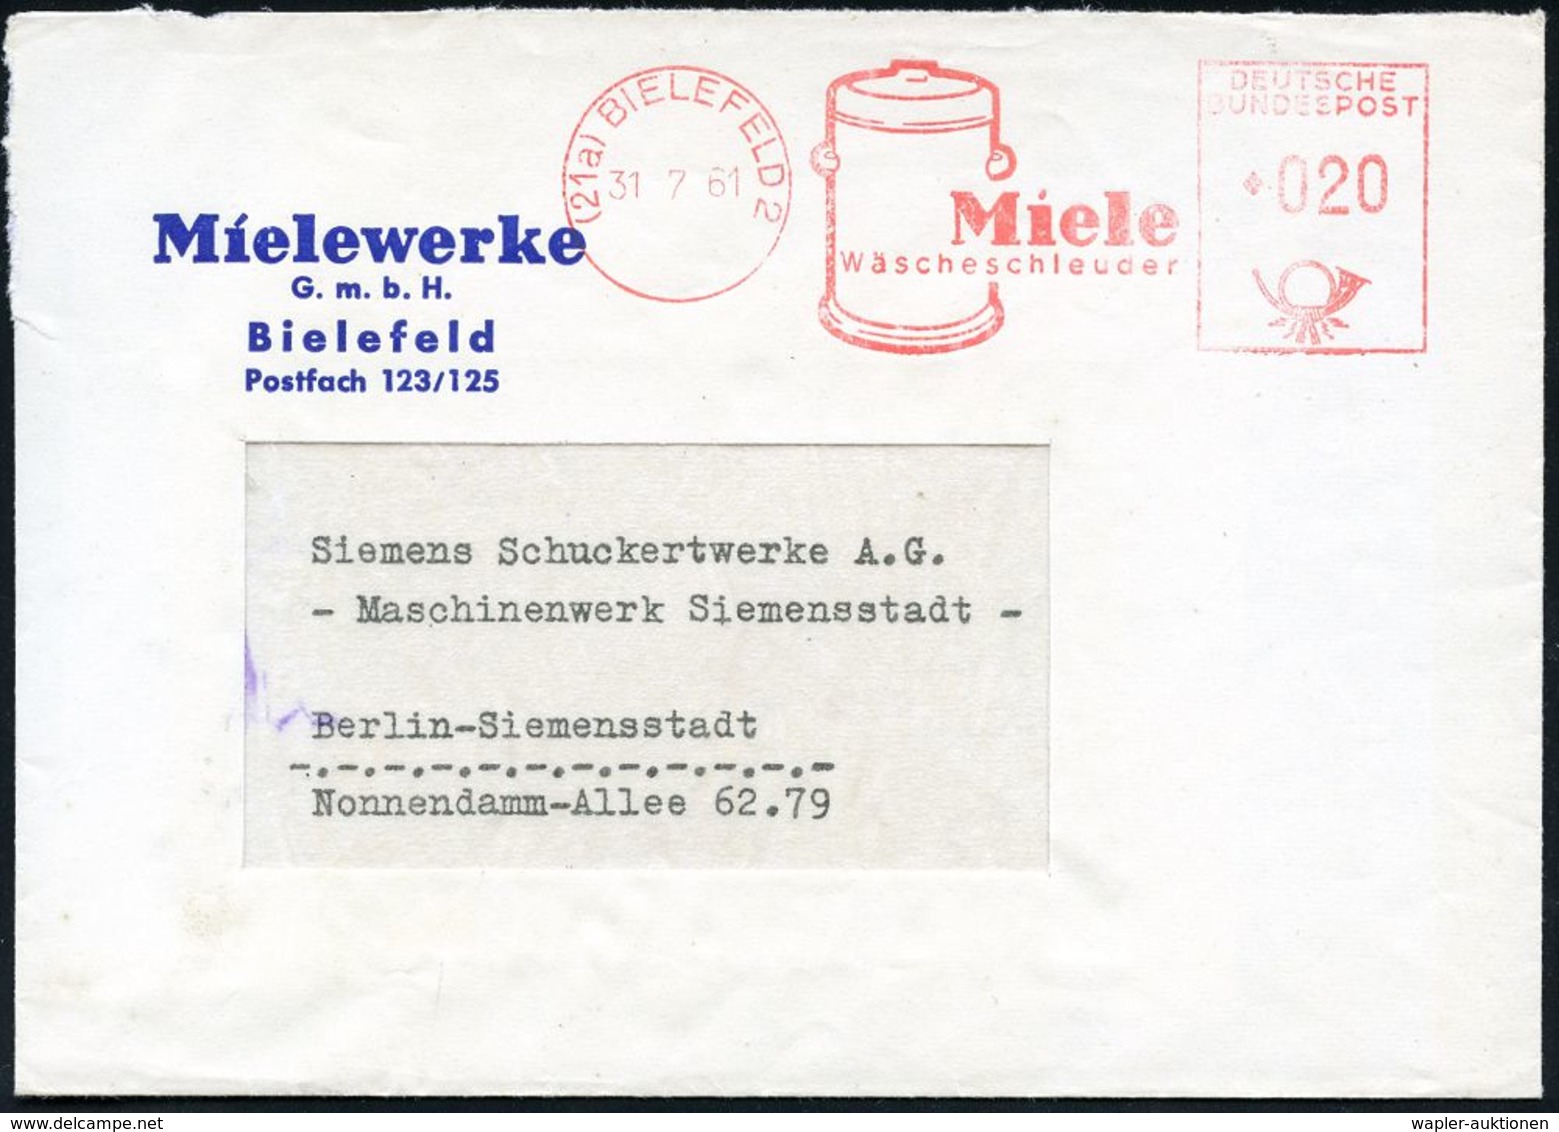 ELEKTRISCHE APPARATE & MASCHINEN : (21a) BIELEFELD 2/ Miele/ Wäscheschleuder 1961 (31.7.) Dekorat. AFS = Wäscheschleuder - Electricity